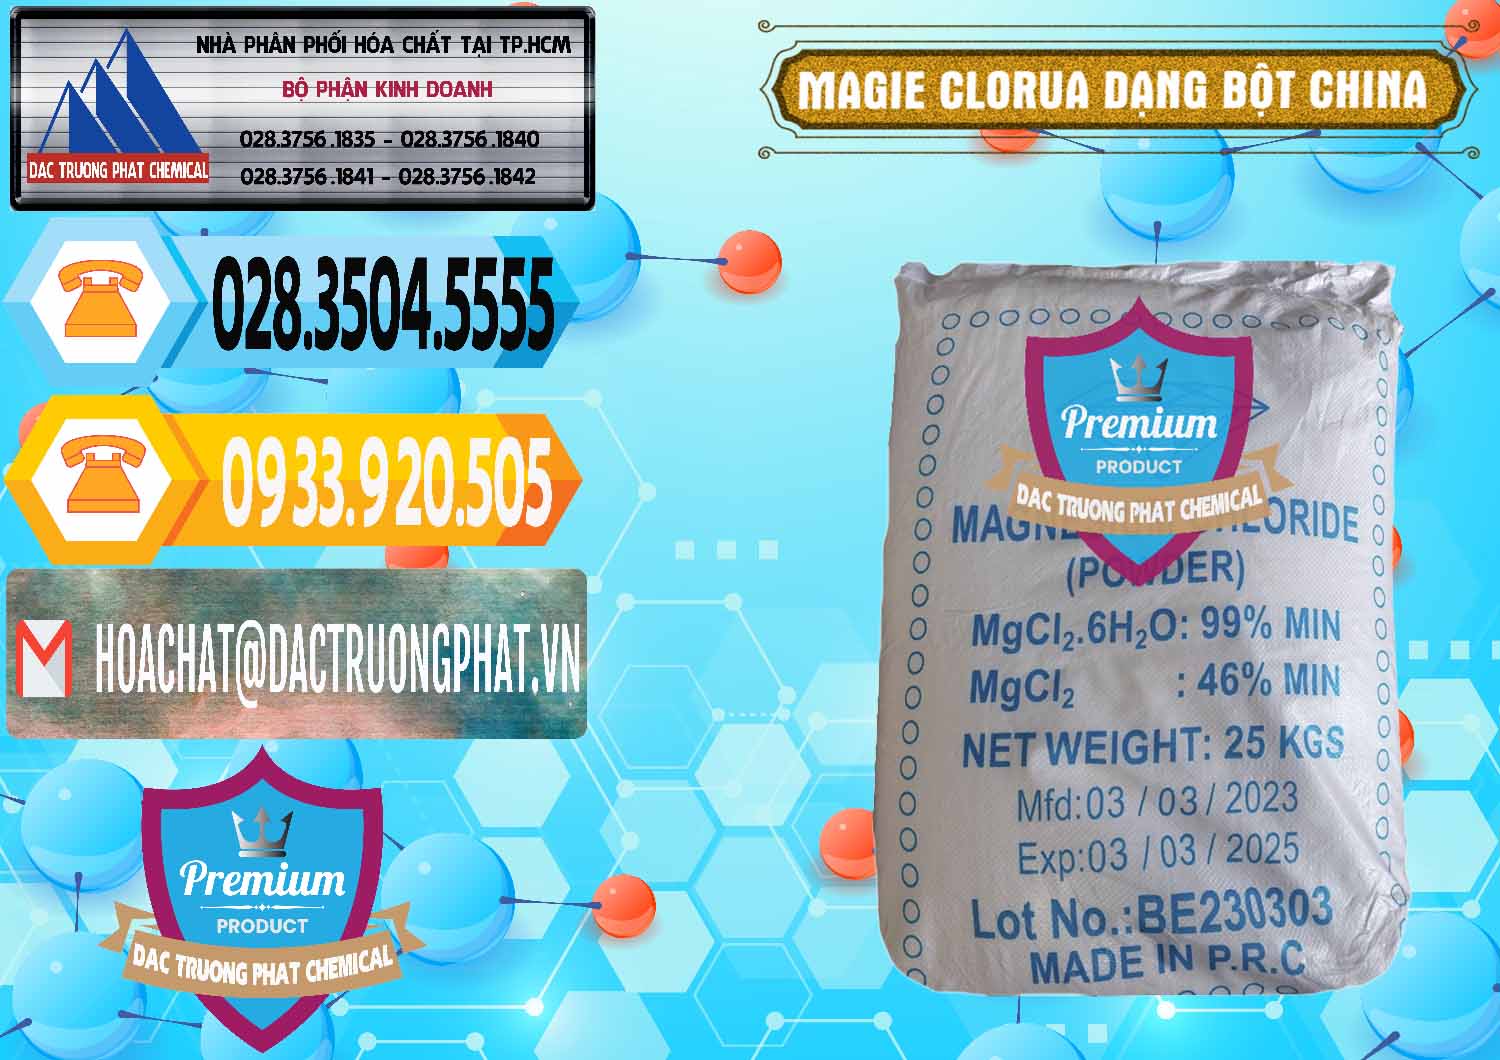 Chuyên cung cấp và bán Magie Clorua – MGCL2 96% Dạng Bột Logo Kim Cương Trung Quốc China - 0387 - Cung cấp ( phân phối ) hóa chất tại TP.HCM - hoachattayrua.net